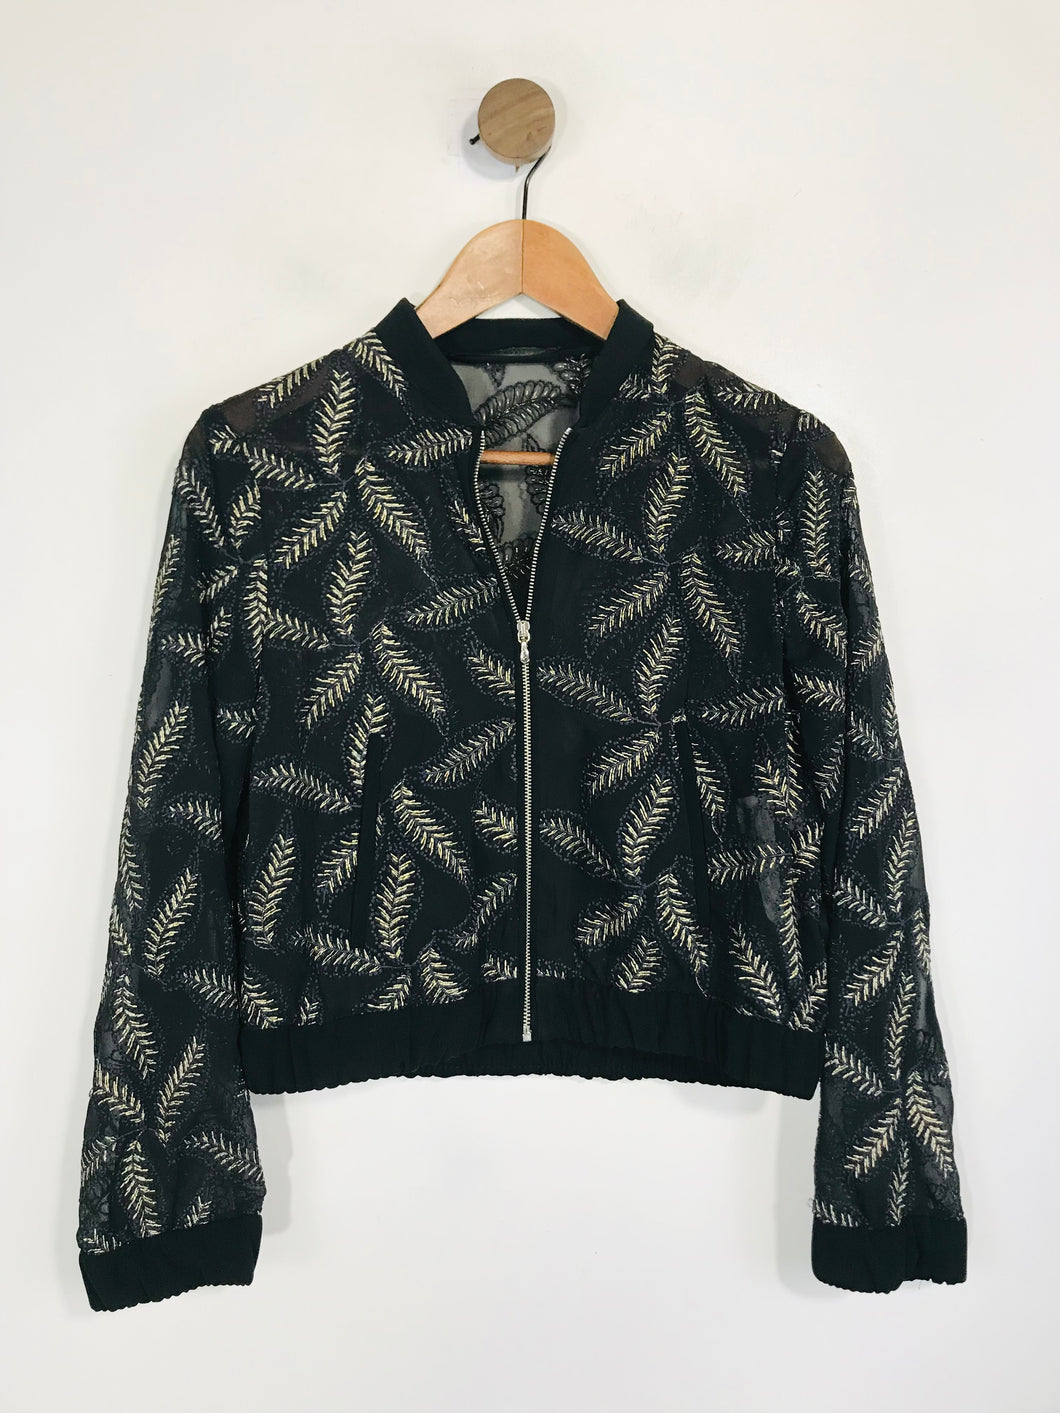 Zara Women's Sheer Embroidered Bomber Jacket | S UK8 | Black